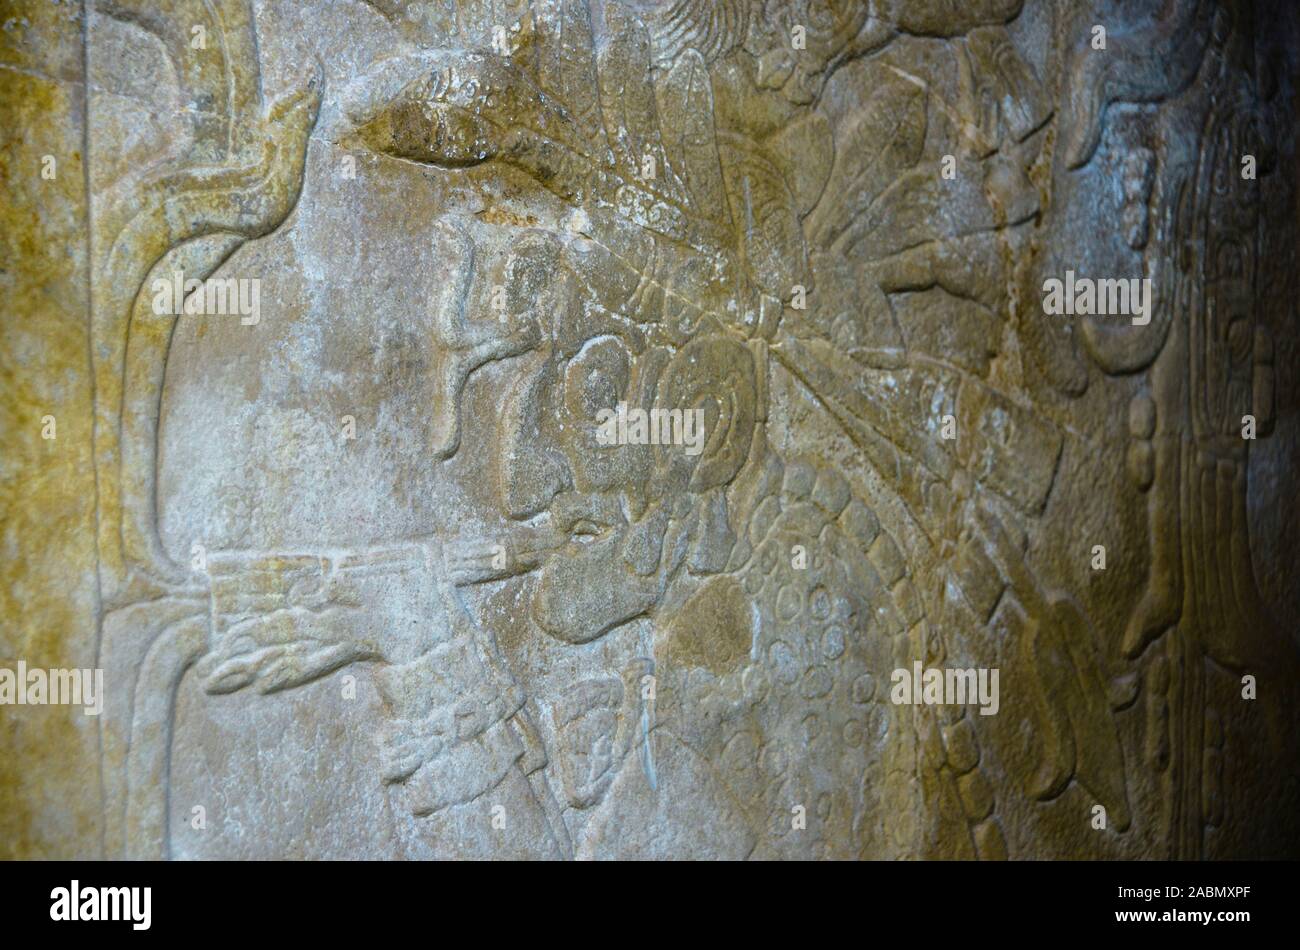 Gott der Unterwelt raucht Pfeife, Steinrelief, Kreuztempel, Templo de la Cruz, Mayaruinen, Palenque, Chiapas, Mexiko Stock Photo